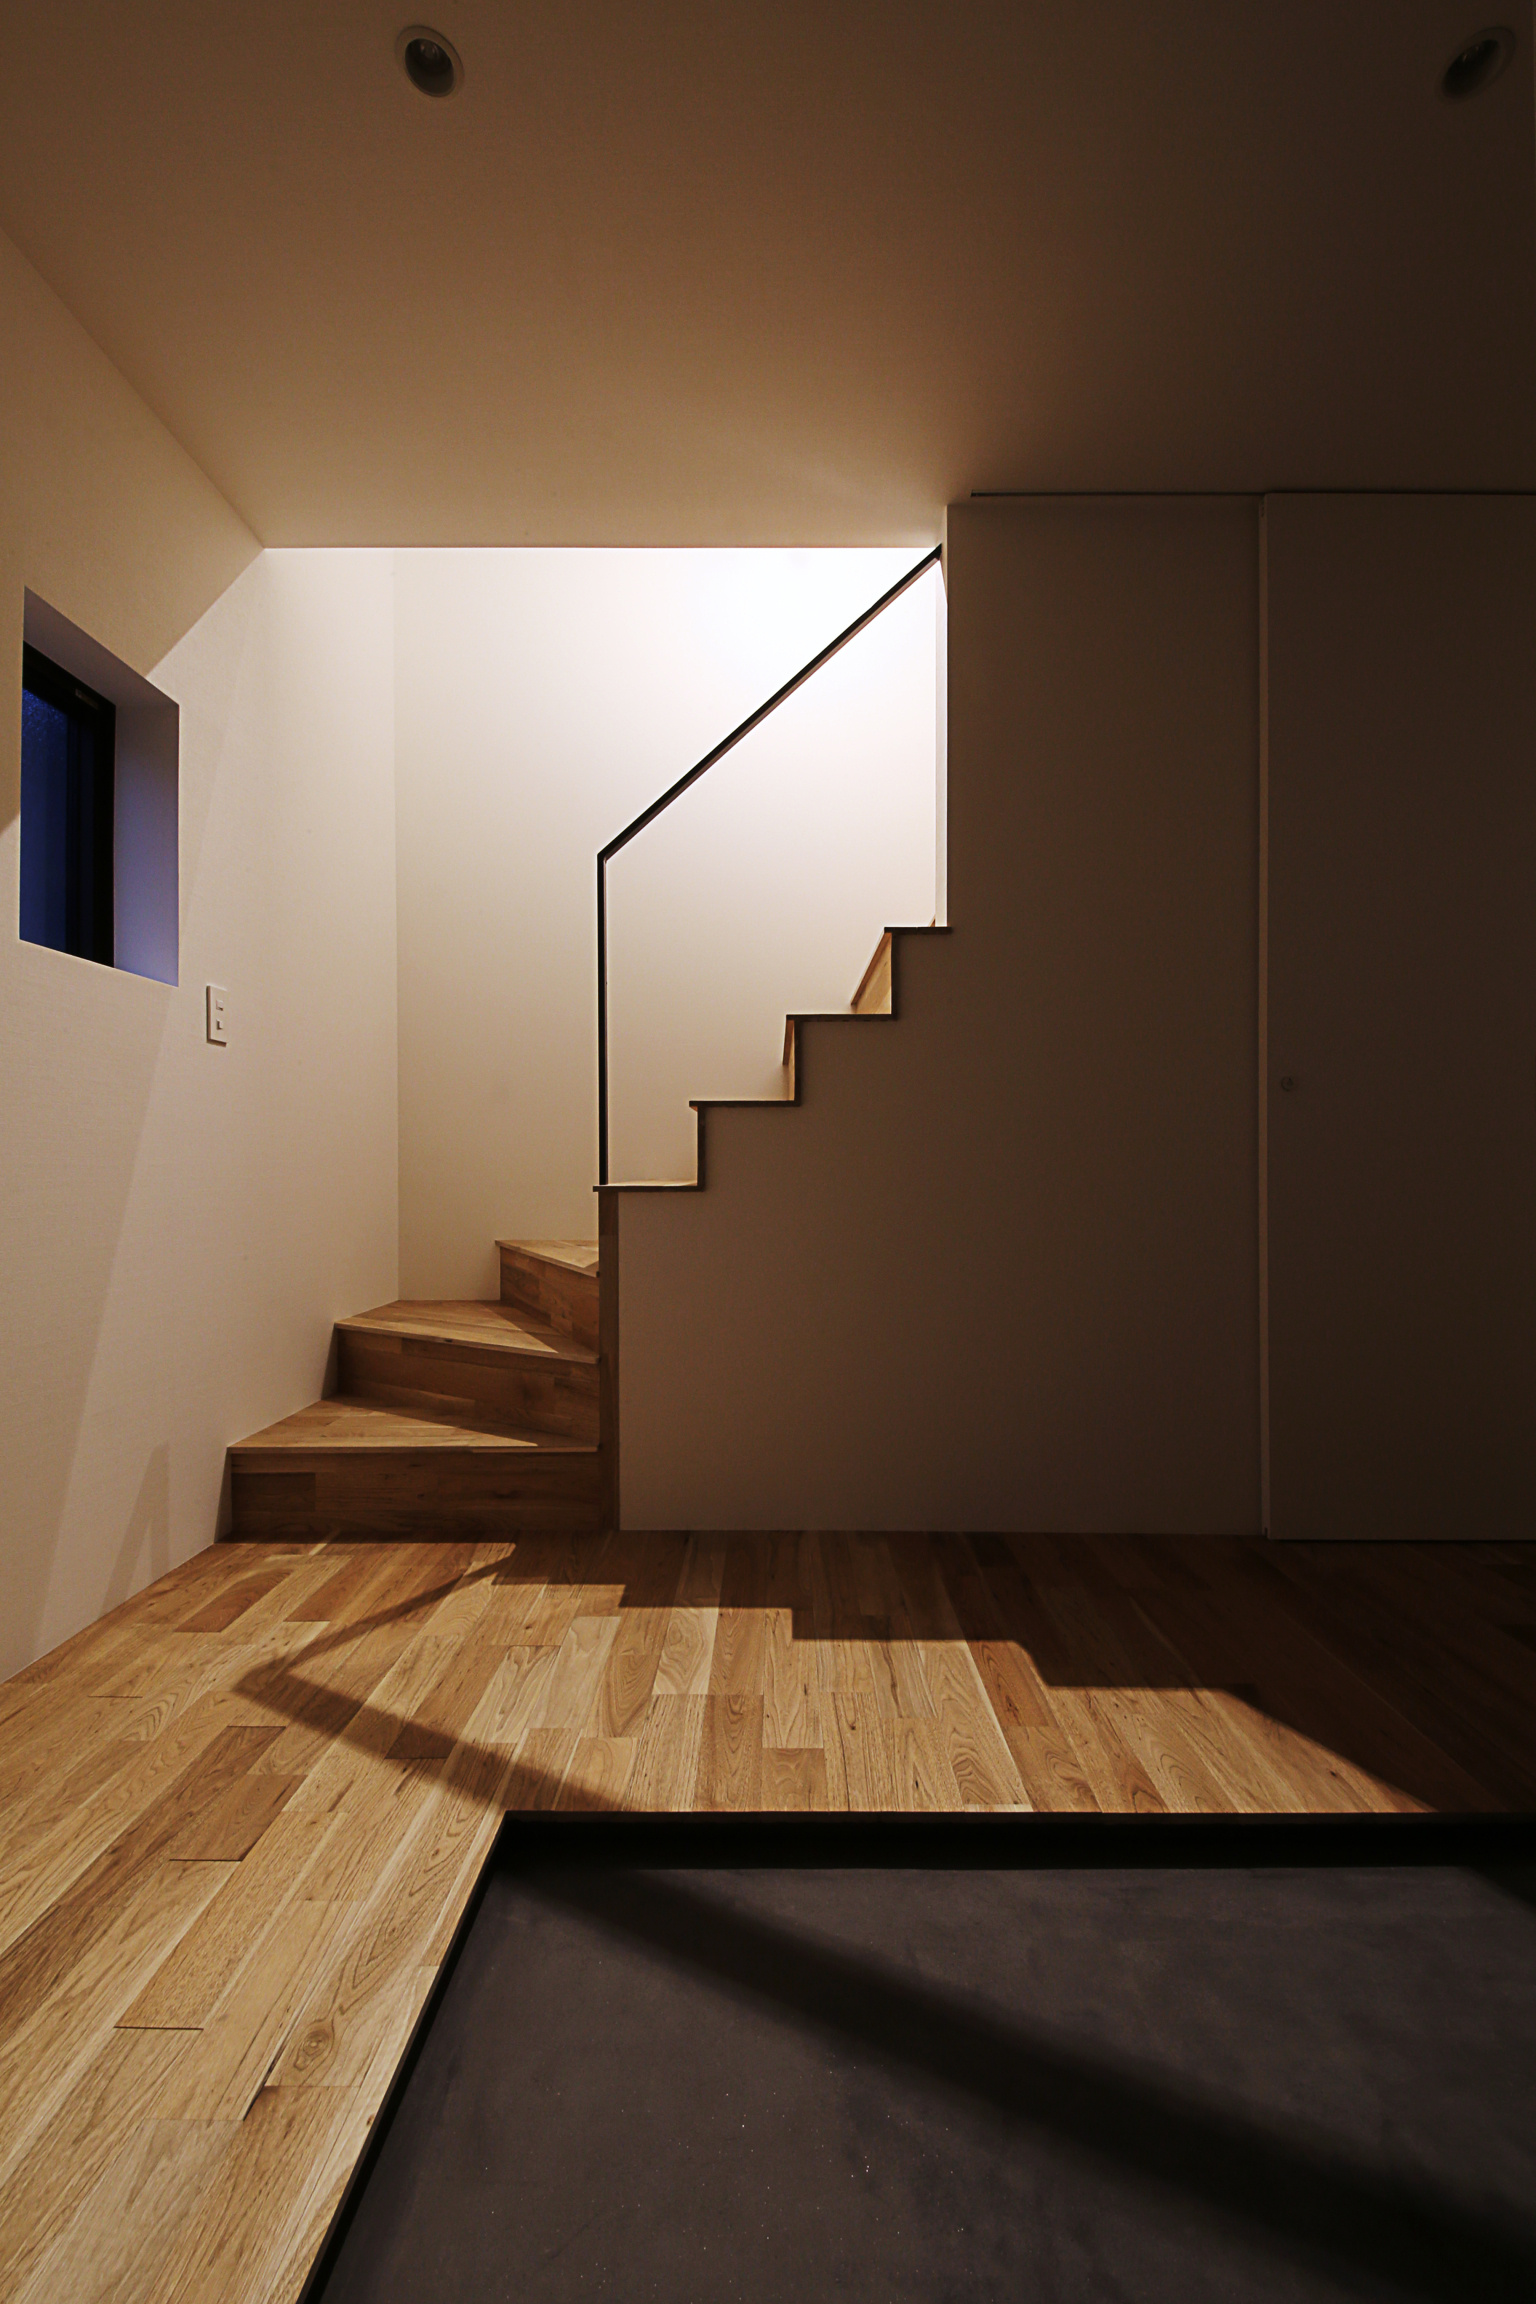 シンプルな雰囲気の玄関ホール。段々のラインが意匠性を高める階段。